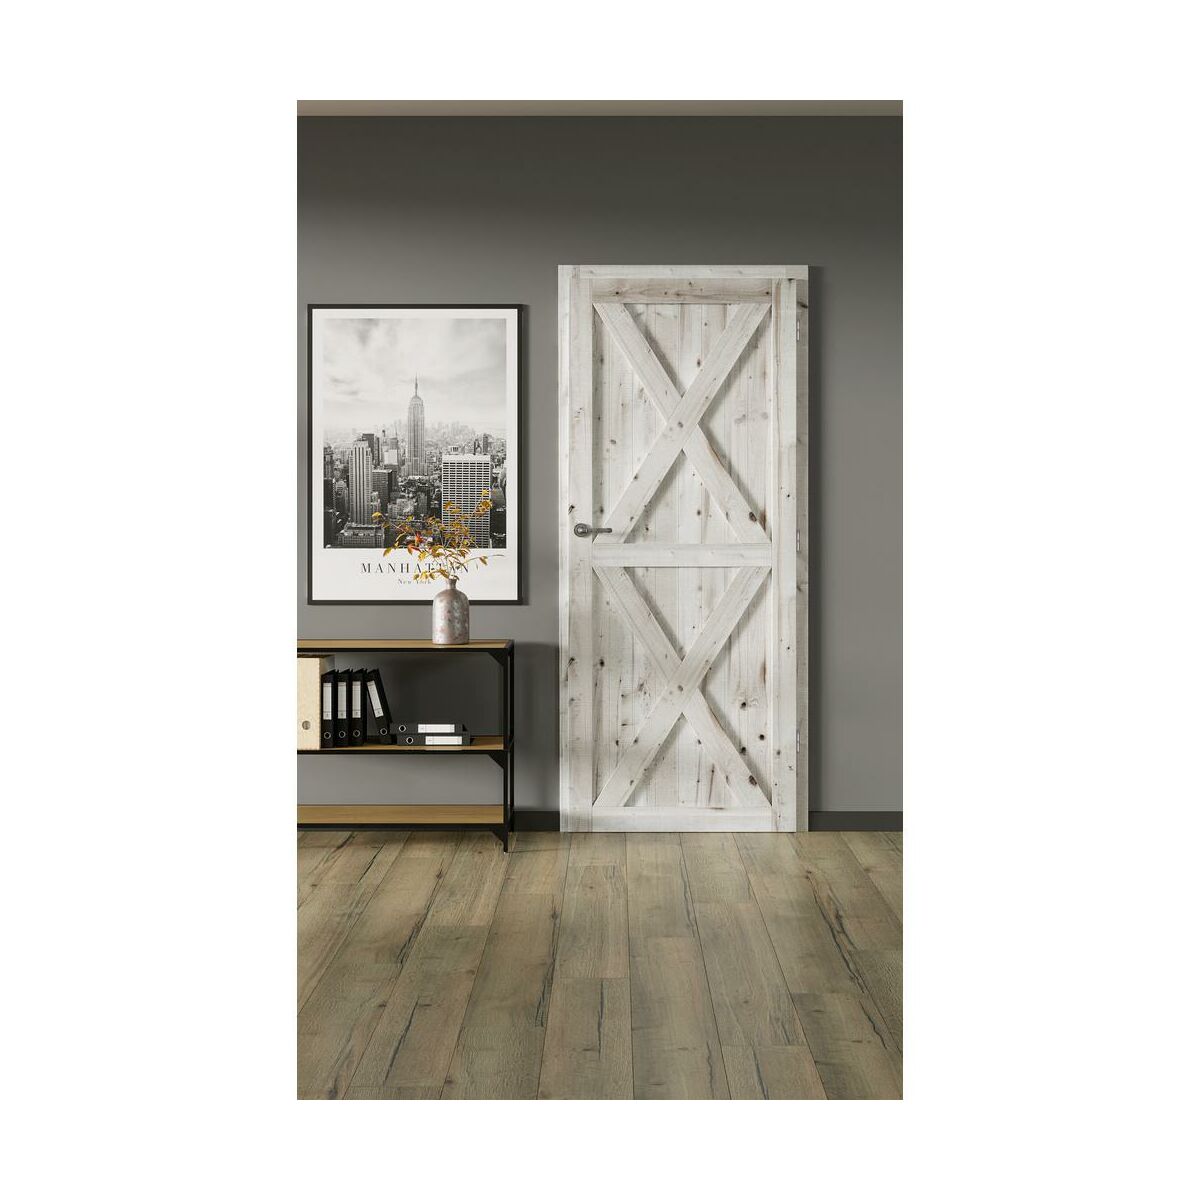 Drzwi wewnętrzne drewniane pełne Loft XX 80 Lewe Radex